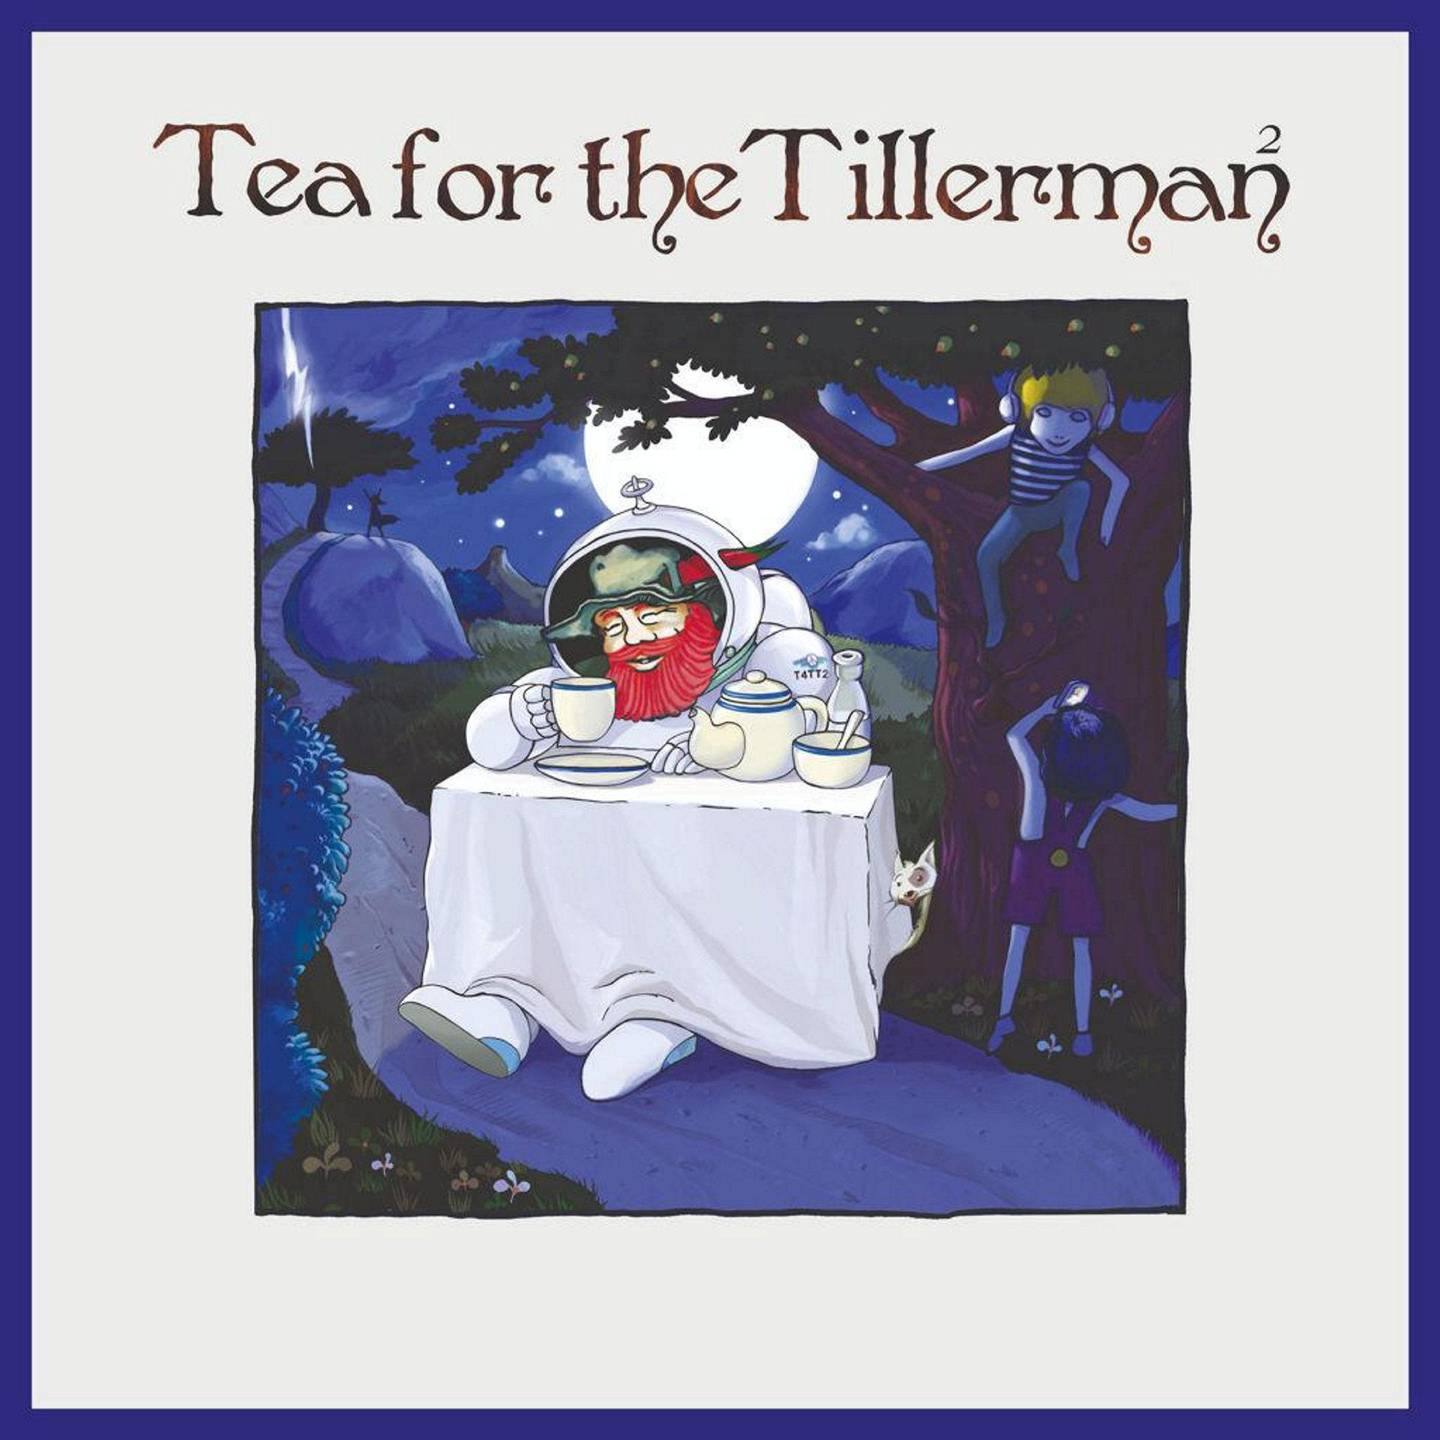 Yusuf (Cat Stevens),KUL Anm Musikk B:«Tea For The Tillerman2»
KUL Anm Musikk C:UMC